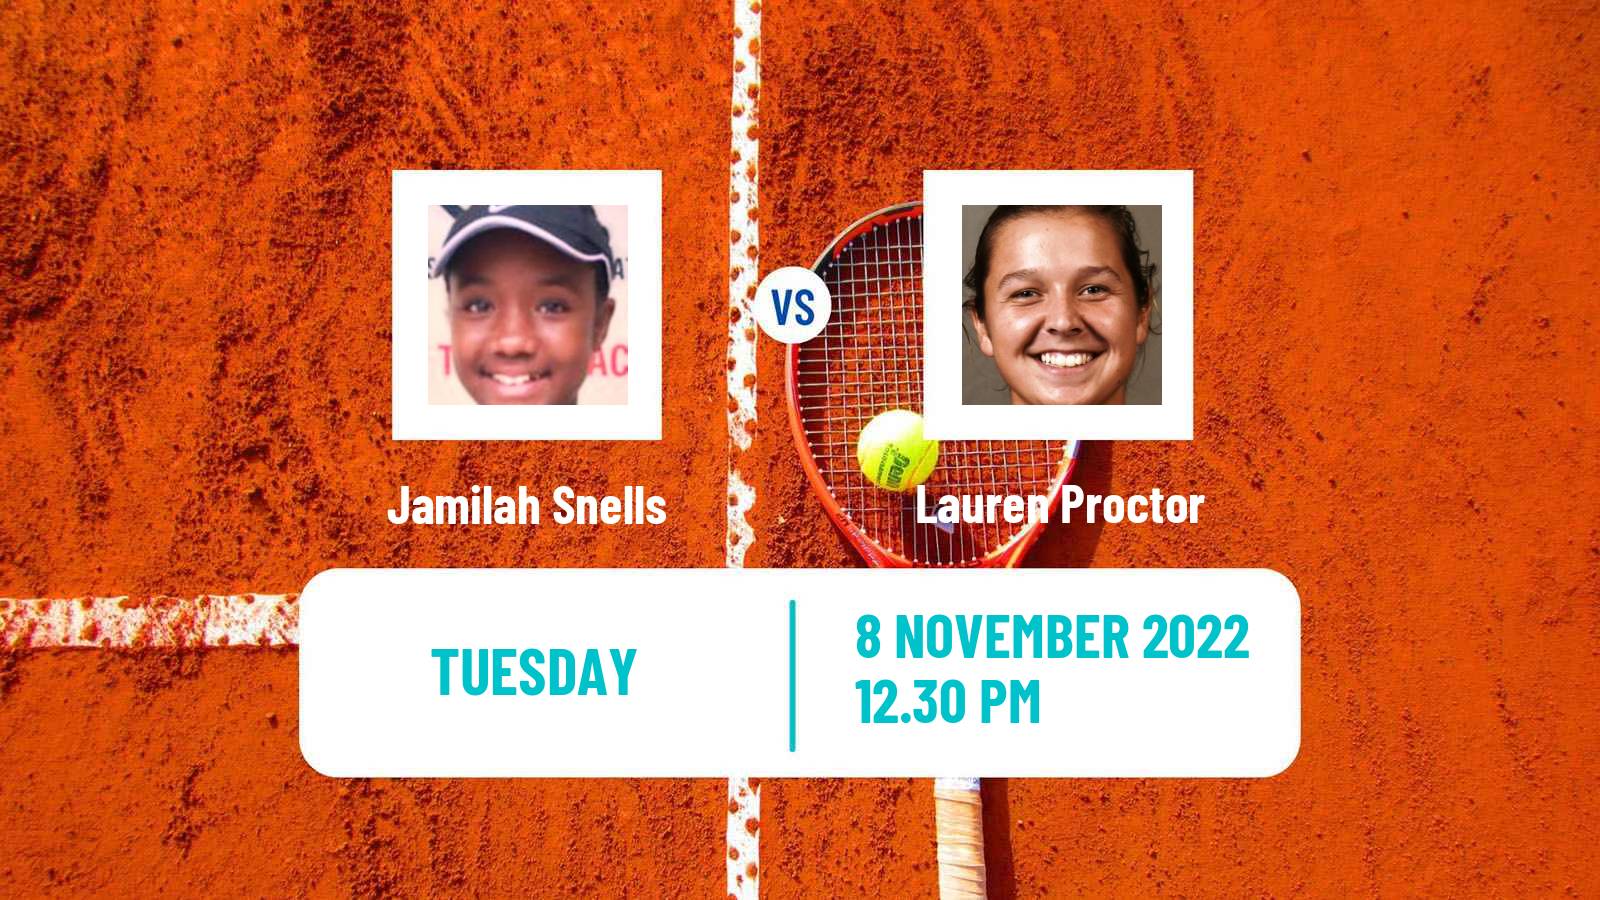 Tennis ITF Tournaments Jamilah Snells - Lauren Proctor